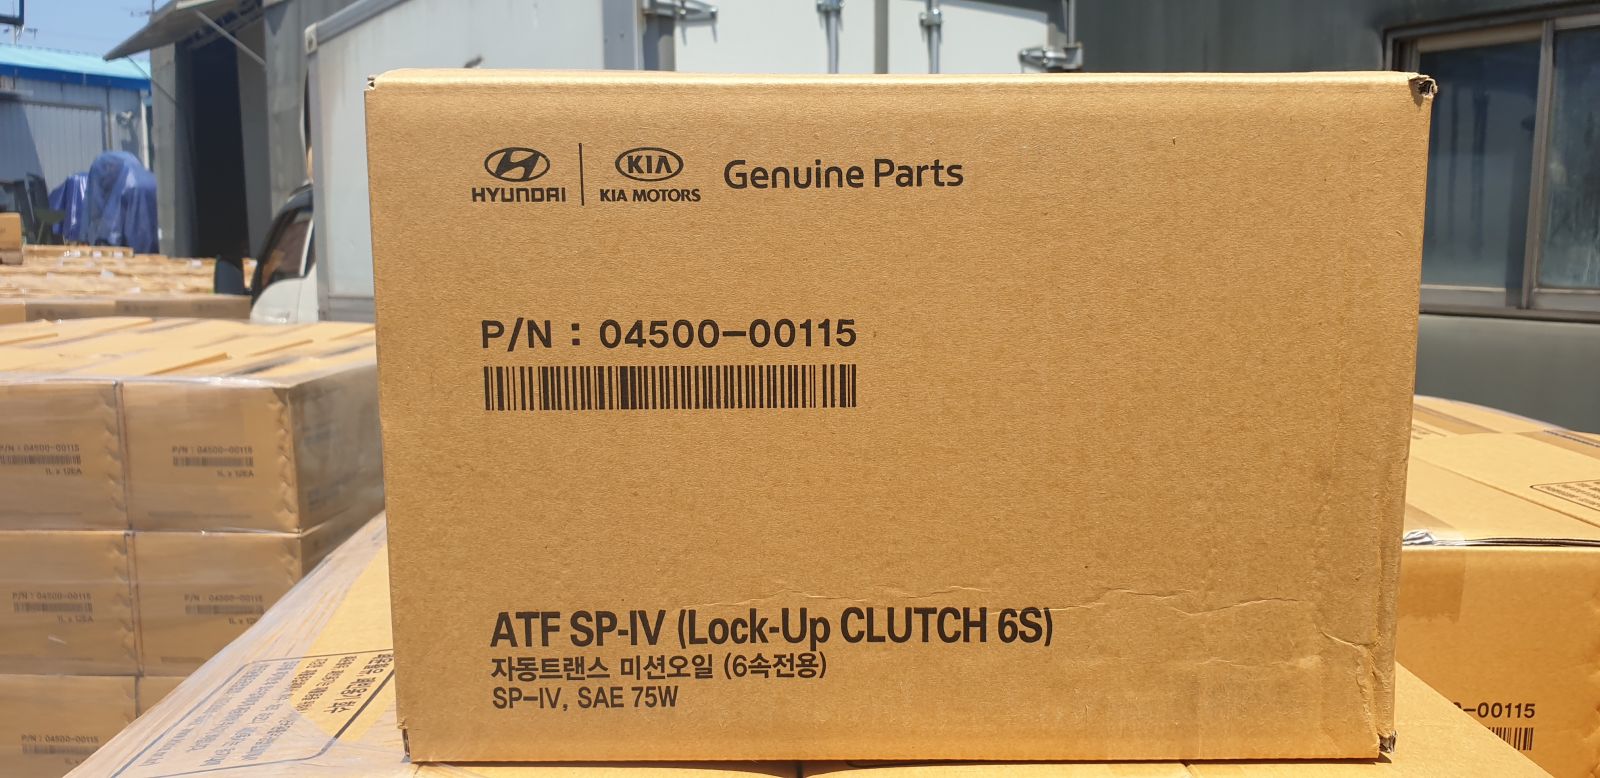 Оригинальная упаковка Hyundai оригинал. Упаковка Genuine Parts. Mobis коробка. Поменялась упаковка